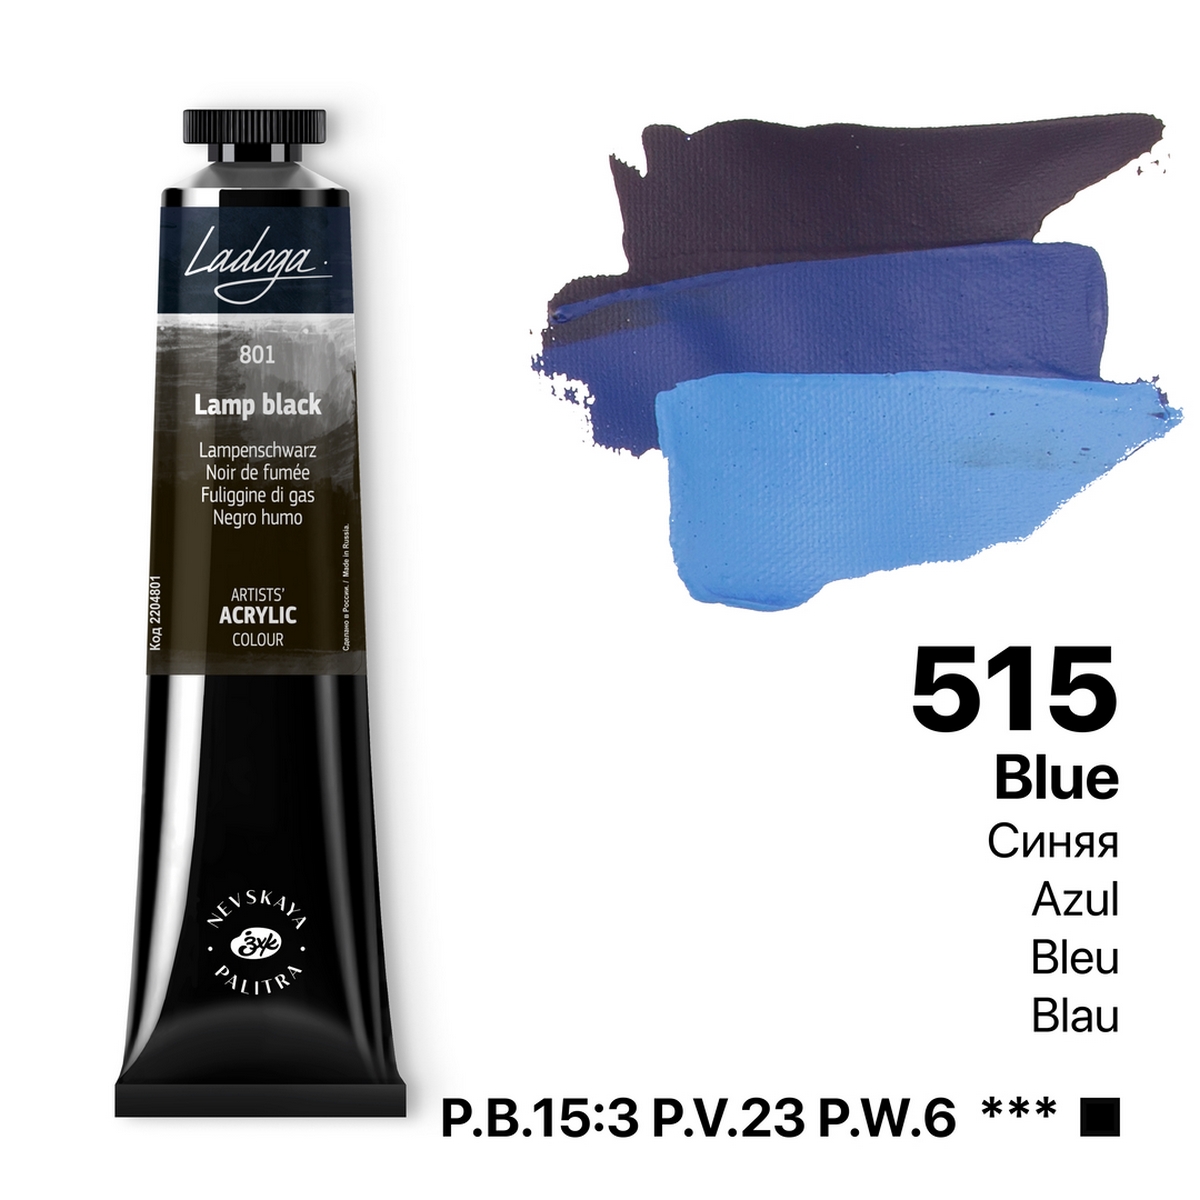 Acrylic colour Ladoga, Blue, № 515